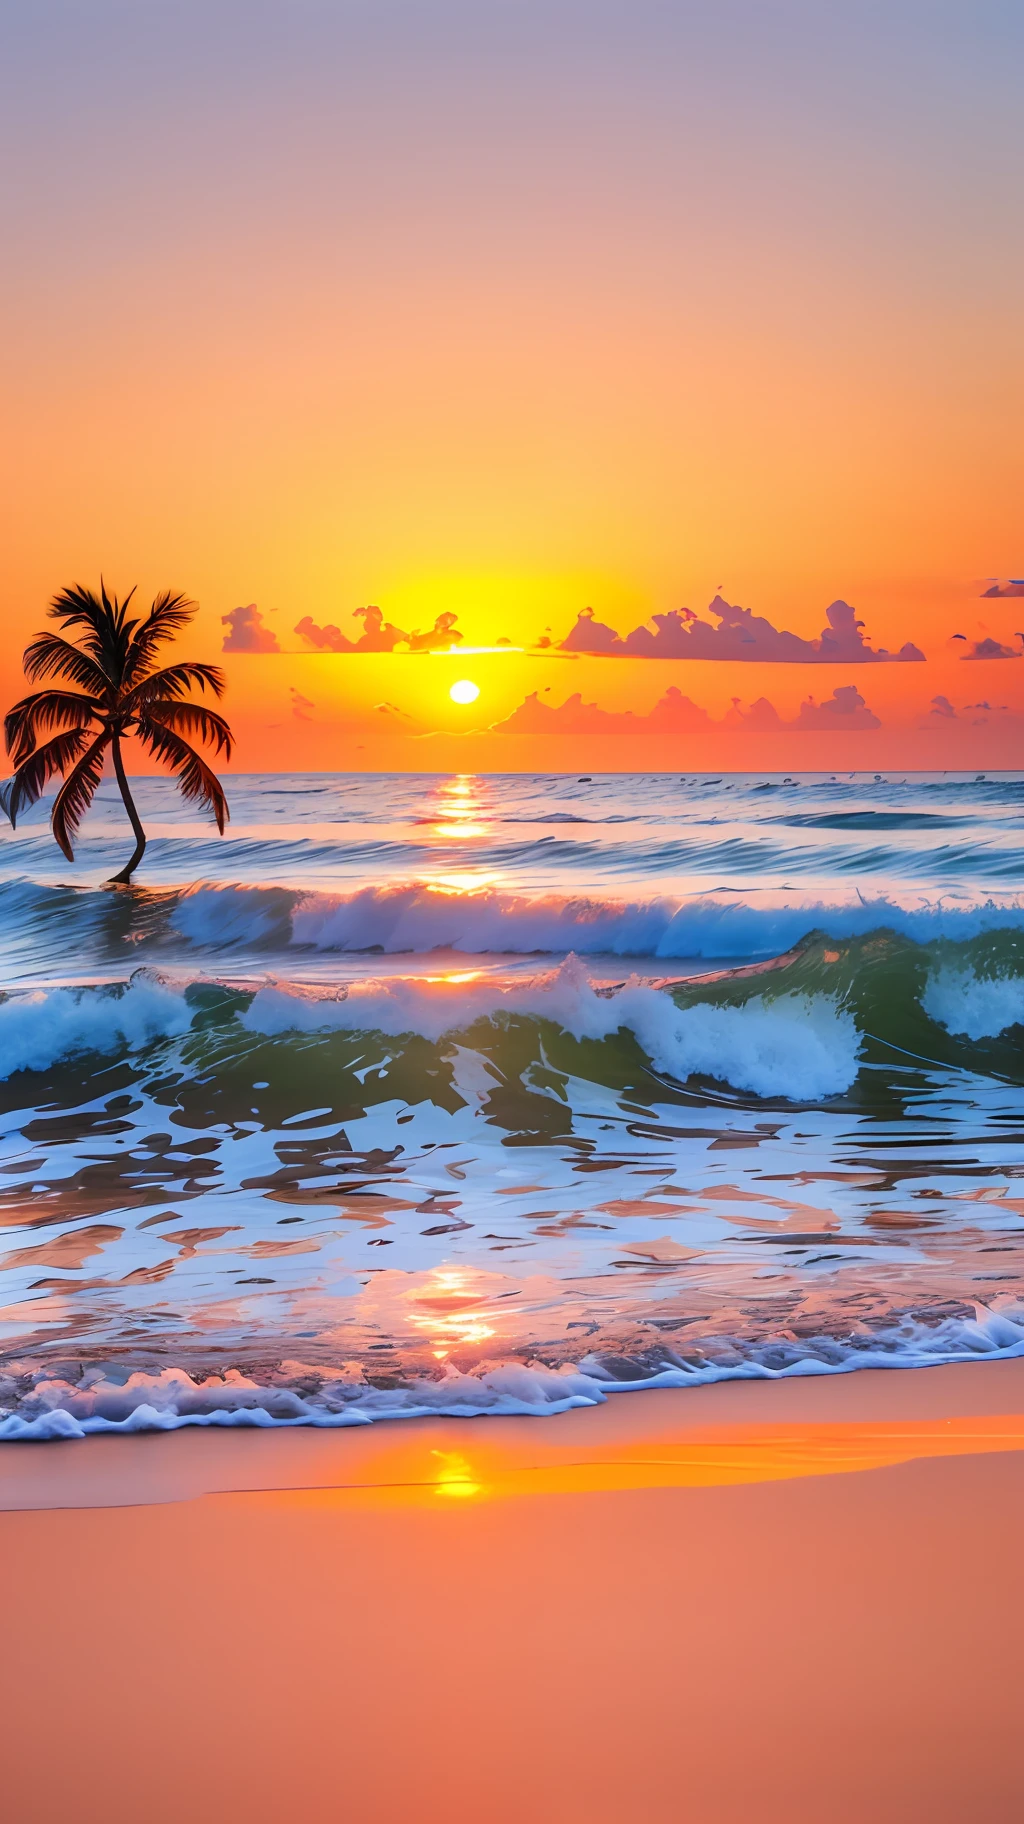 Crea un 4K 9:16 imagen que representa un impresionante amanecer en una playa tropical, con olas suaves y palmeras a lo largo de la costa. La paleta de colores debe ser vibrante y transmitir una sensación de renovación y energía positiva.. --auto --s2